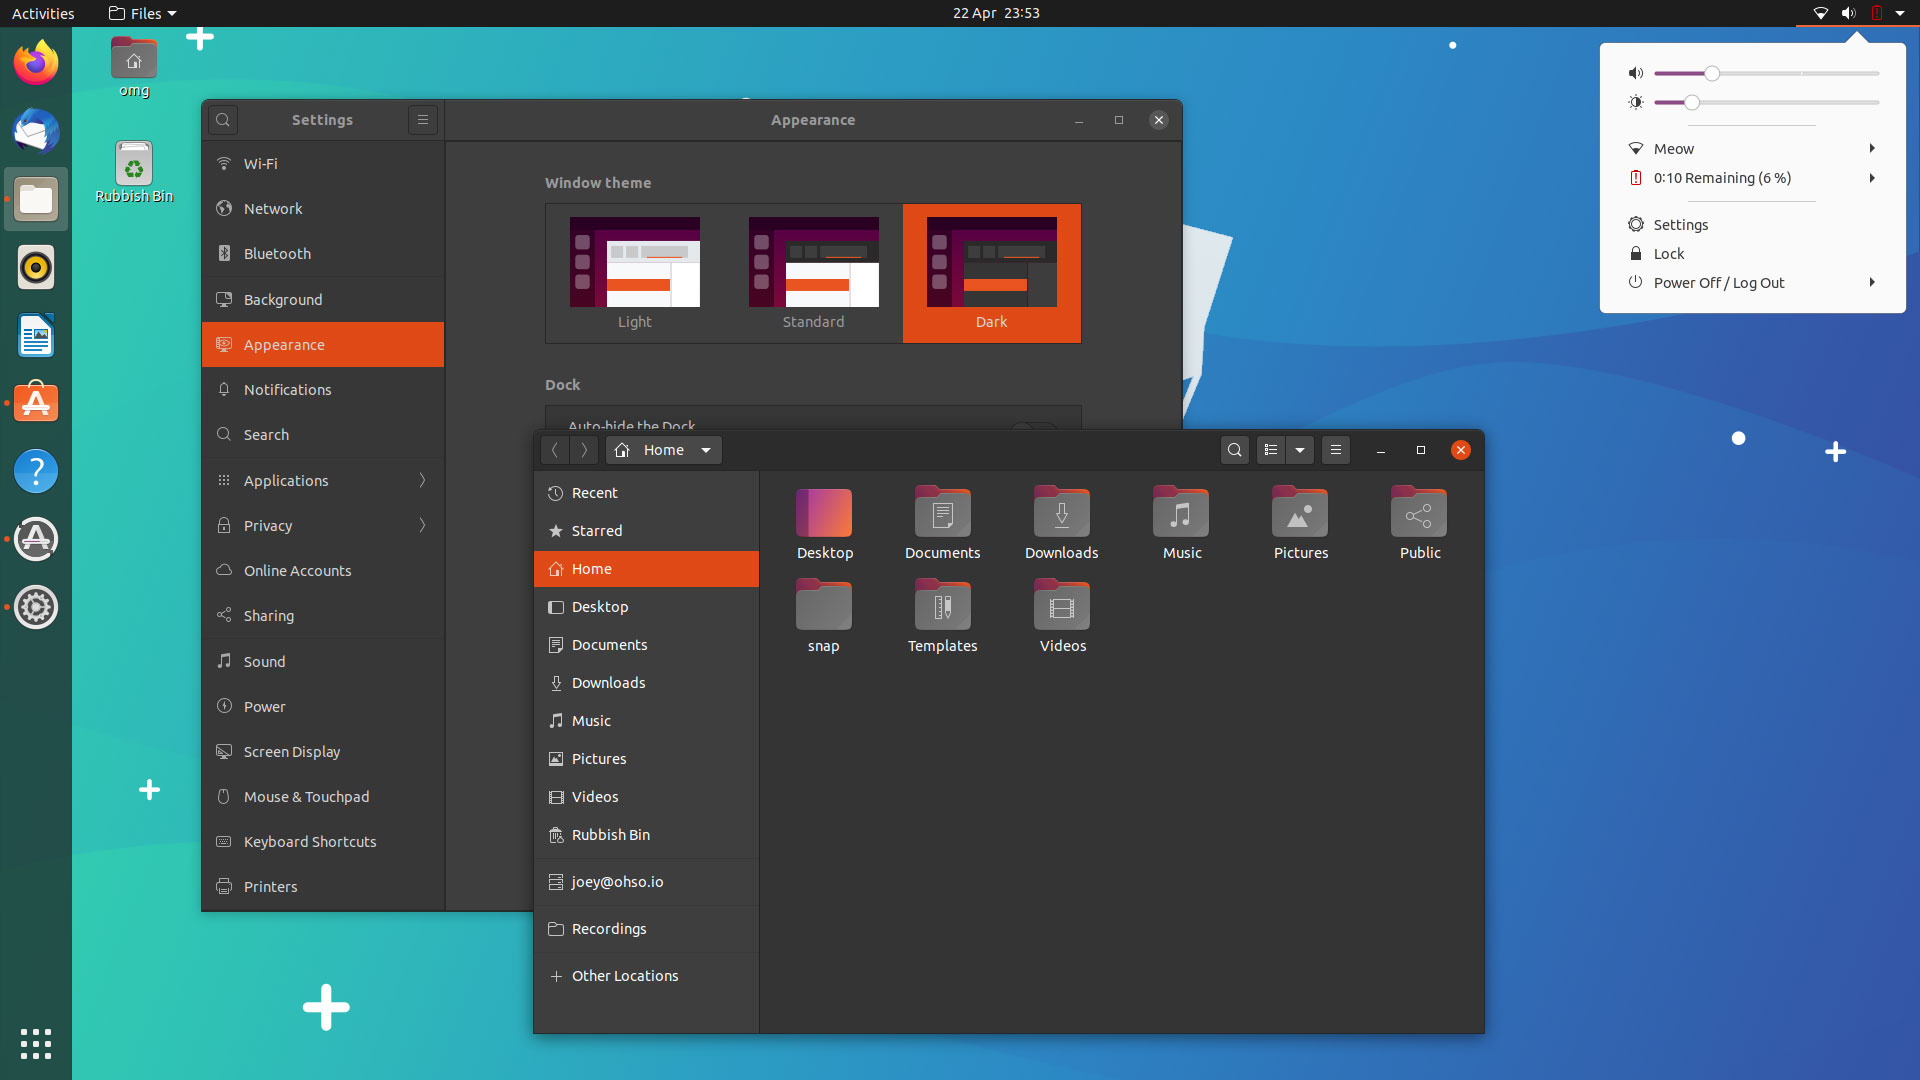 Kích hoạt chế độ tối đầy đủ trên Ubuntu 20.04 LTS ngay bây giờ để làm giảm ánh sáng làm nản lòng trong quá trình làm việc. Chế độ tối sẽ giúp mắt bạn dễ chịu hơn, giảm mệt mỏi và tăng năng suất làm việc. Thưởng thức cảm giác thoải mái và tốt cho sức khỏe ngay từ giờ.